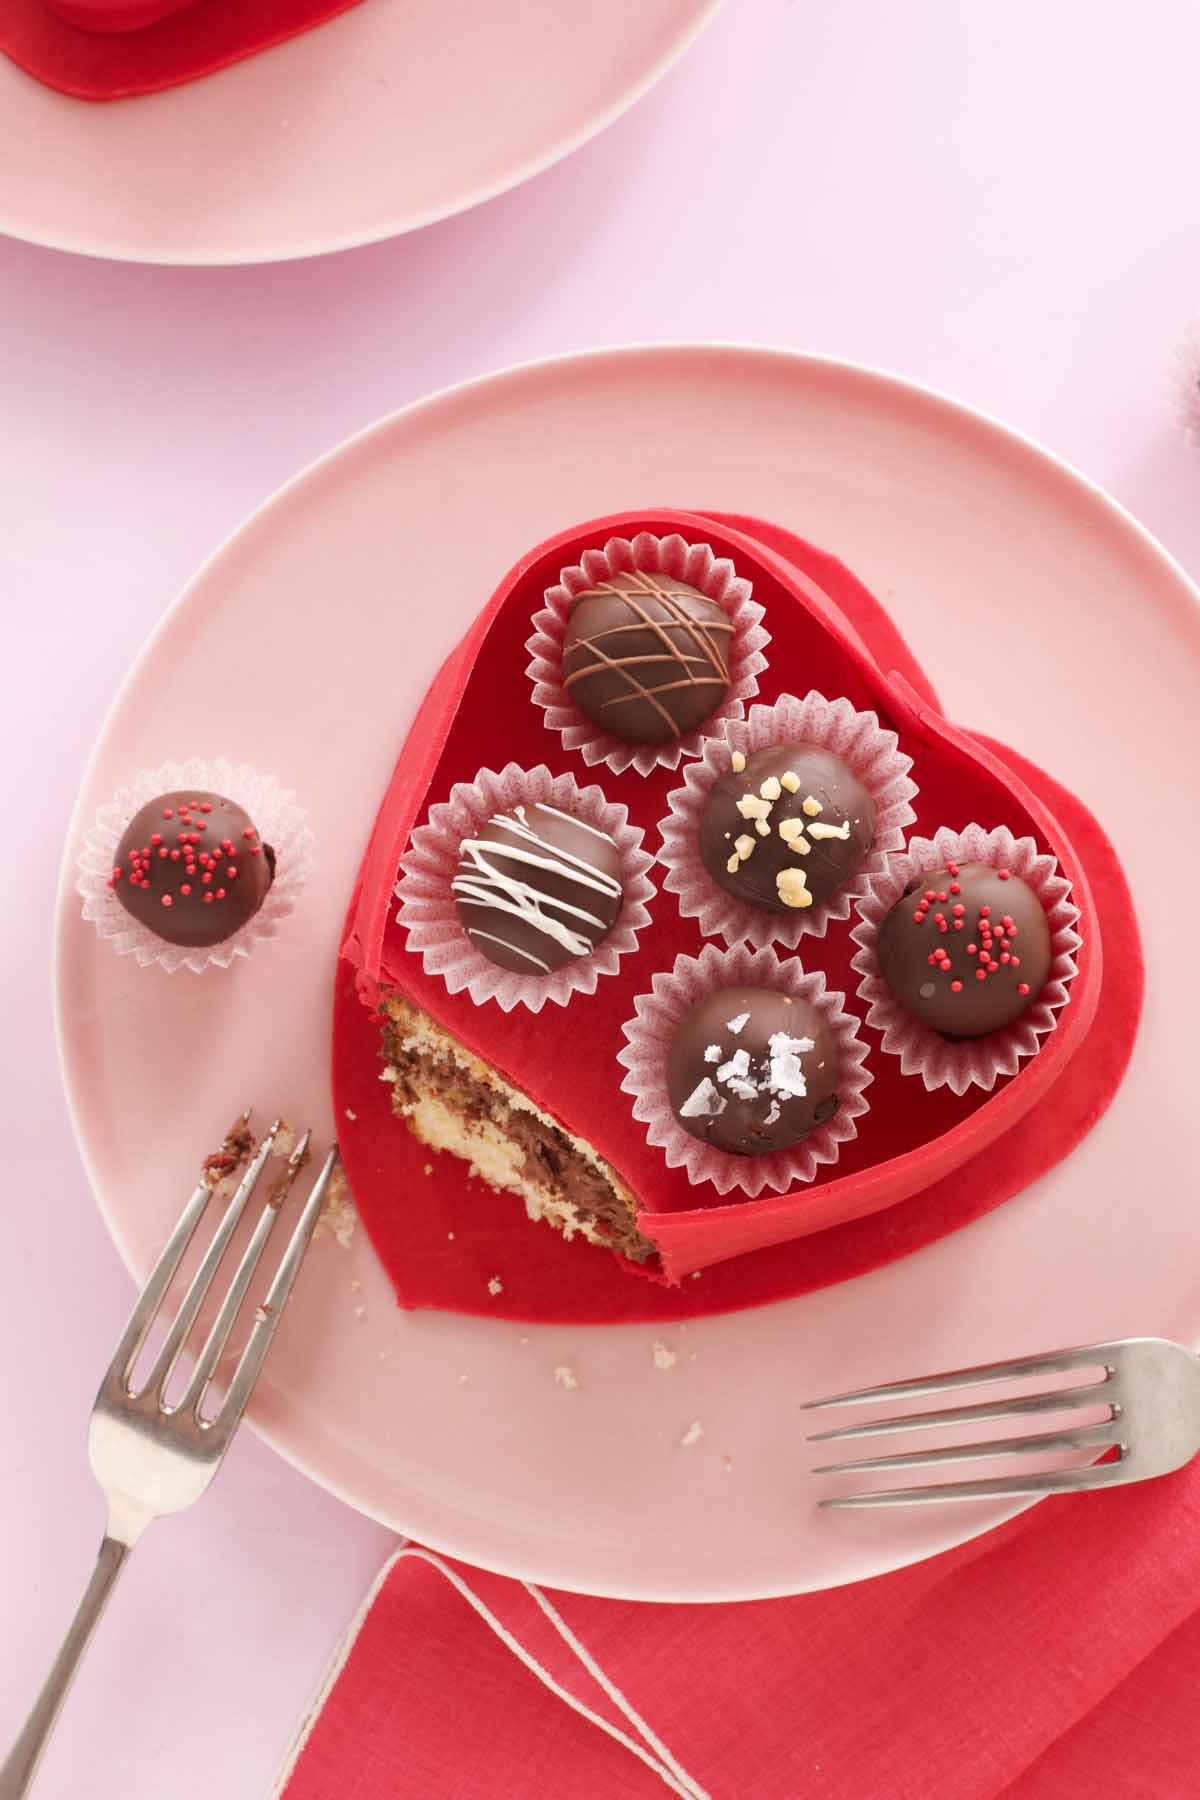 Best Valentines Desserts
 40 Valentine’s Day Desserts Best Recipes for Valentines